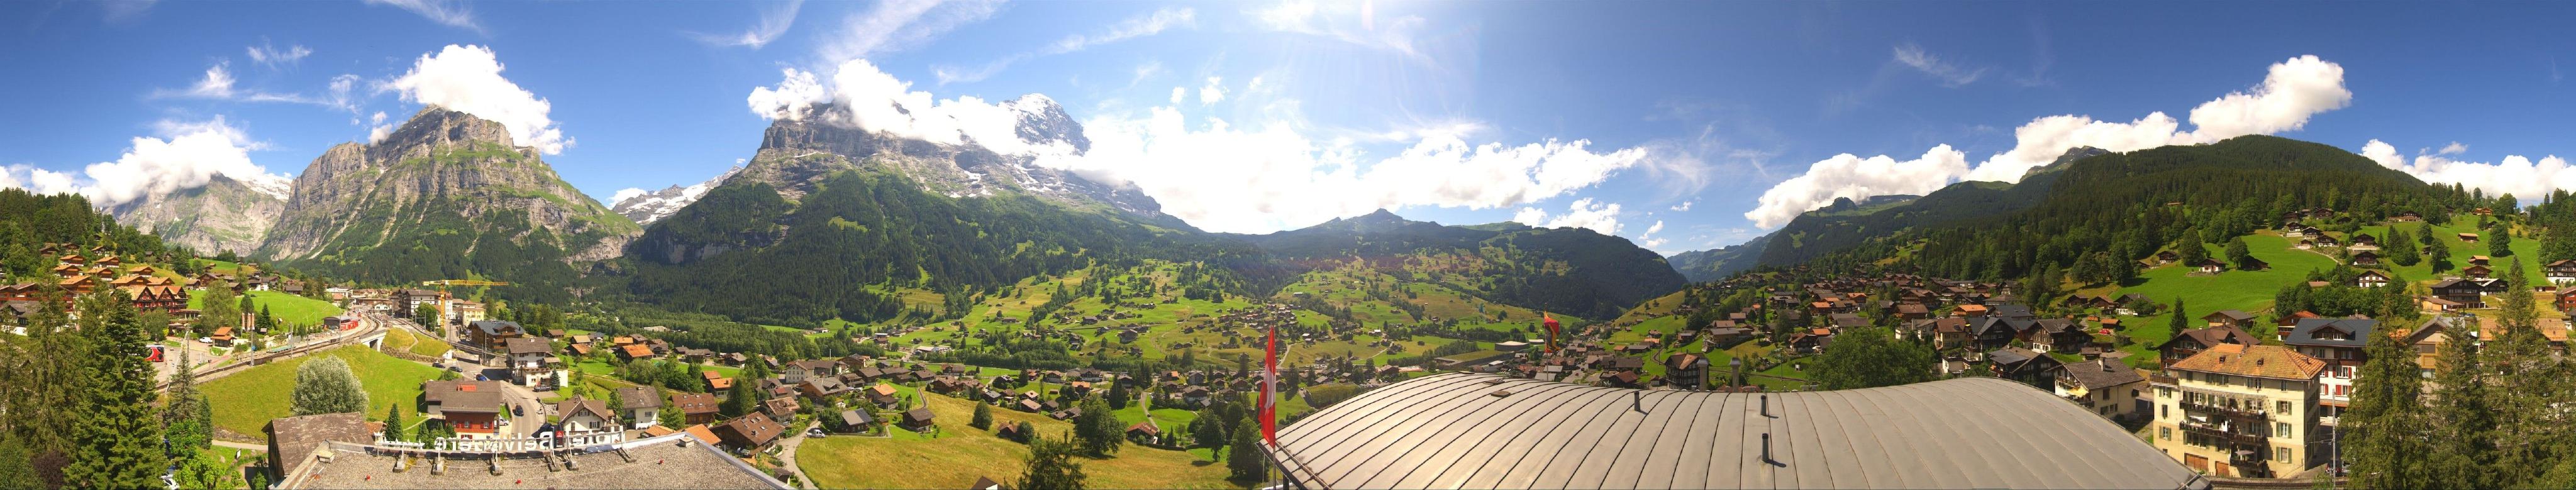 Grindelwald: Belvedere Swiss Quality Hotel Grindelwald - Eiger - Wetterhorn - Kleine Scheidegg